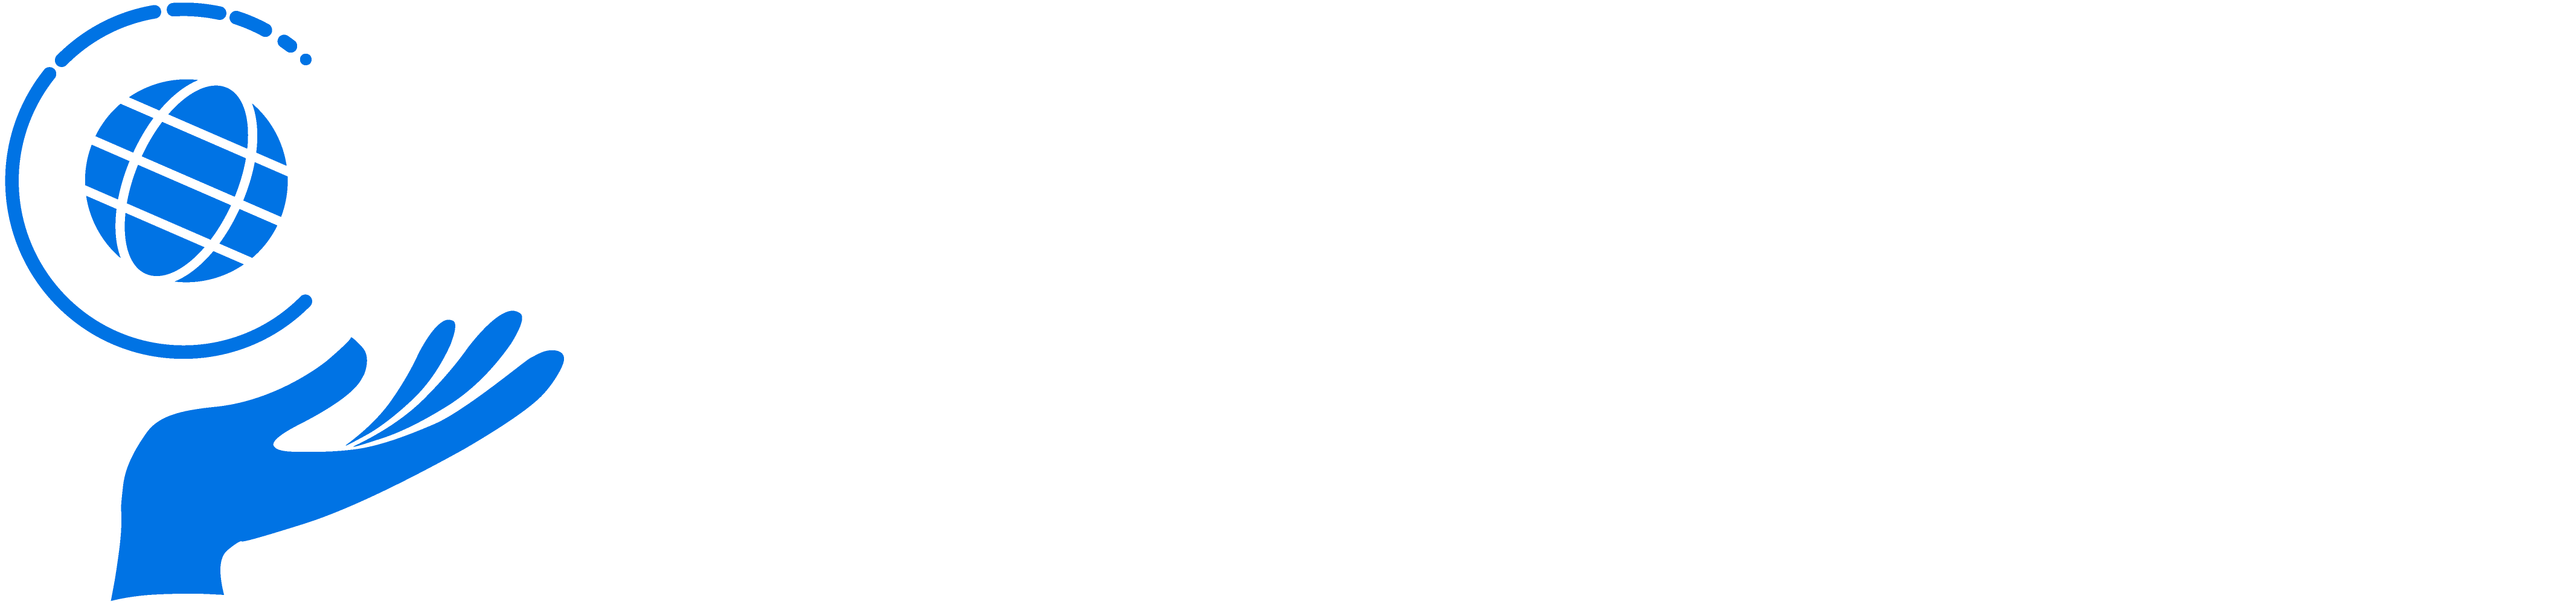 VEDCOMSPOC Logo